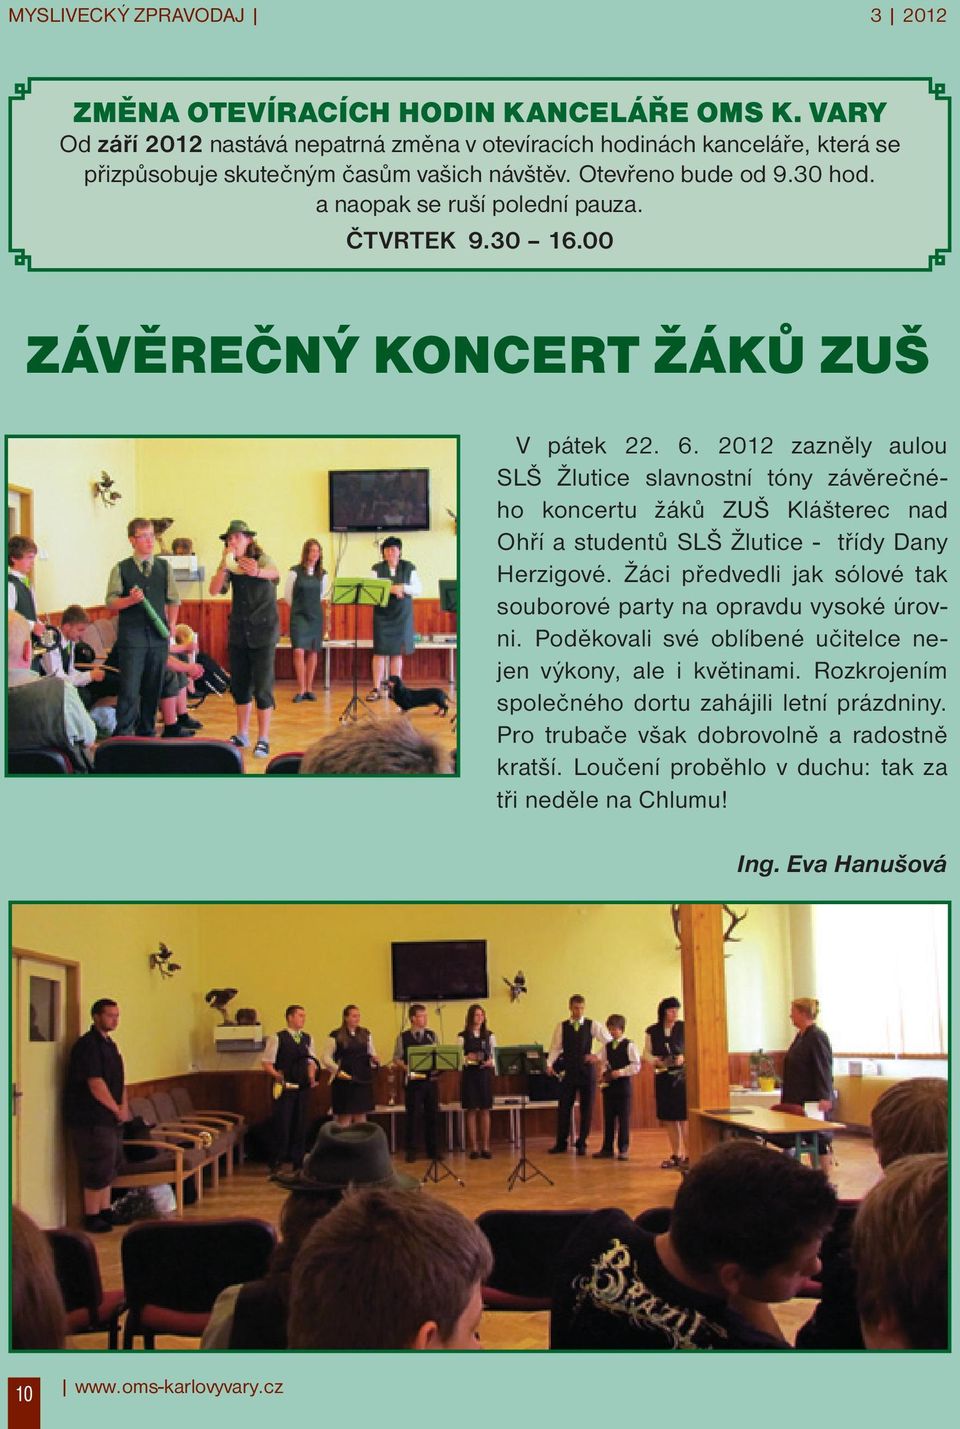 2012 zazněly aulou SLŠ Žlutice slavnostní tóny závěrečného koncertu žáků ZUŠ Klášterec nad Ohří a studentů SLŠ Žlutice - třídy Dany Herzigové.